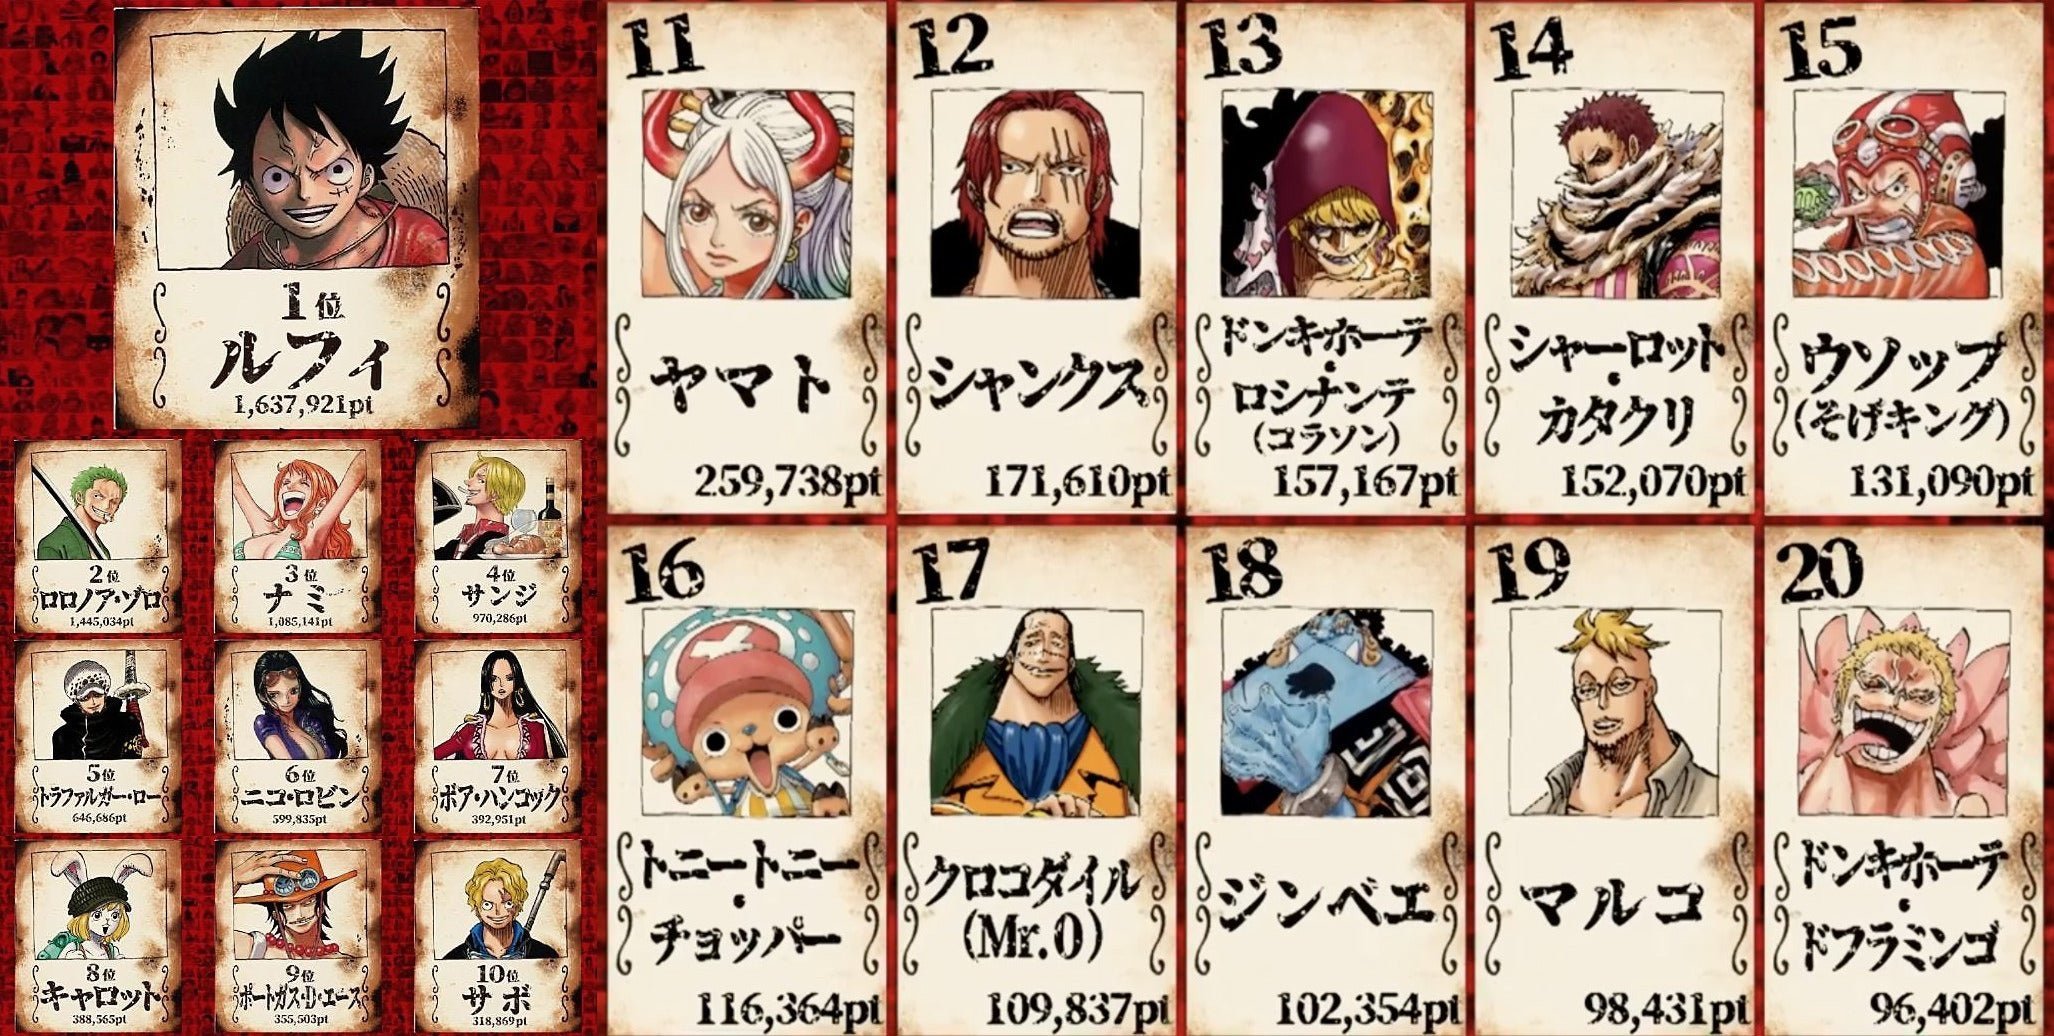 OPEXCast #27 – 27 Motivos para Acompanhar One Piece na OPEX